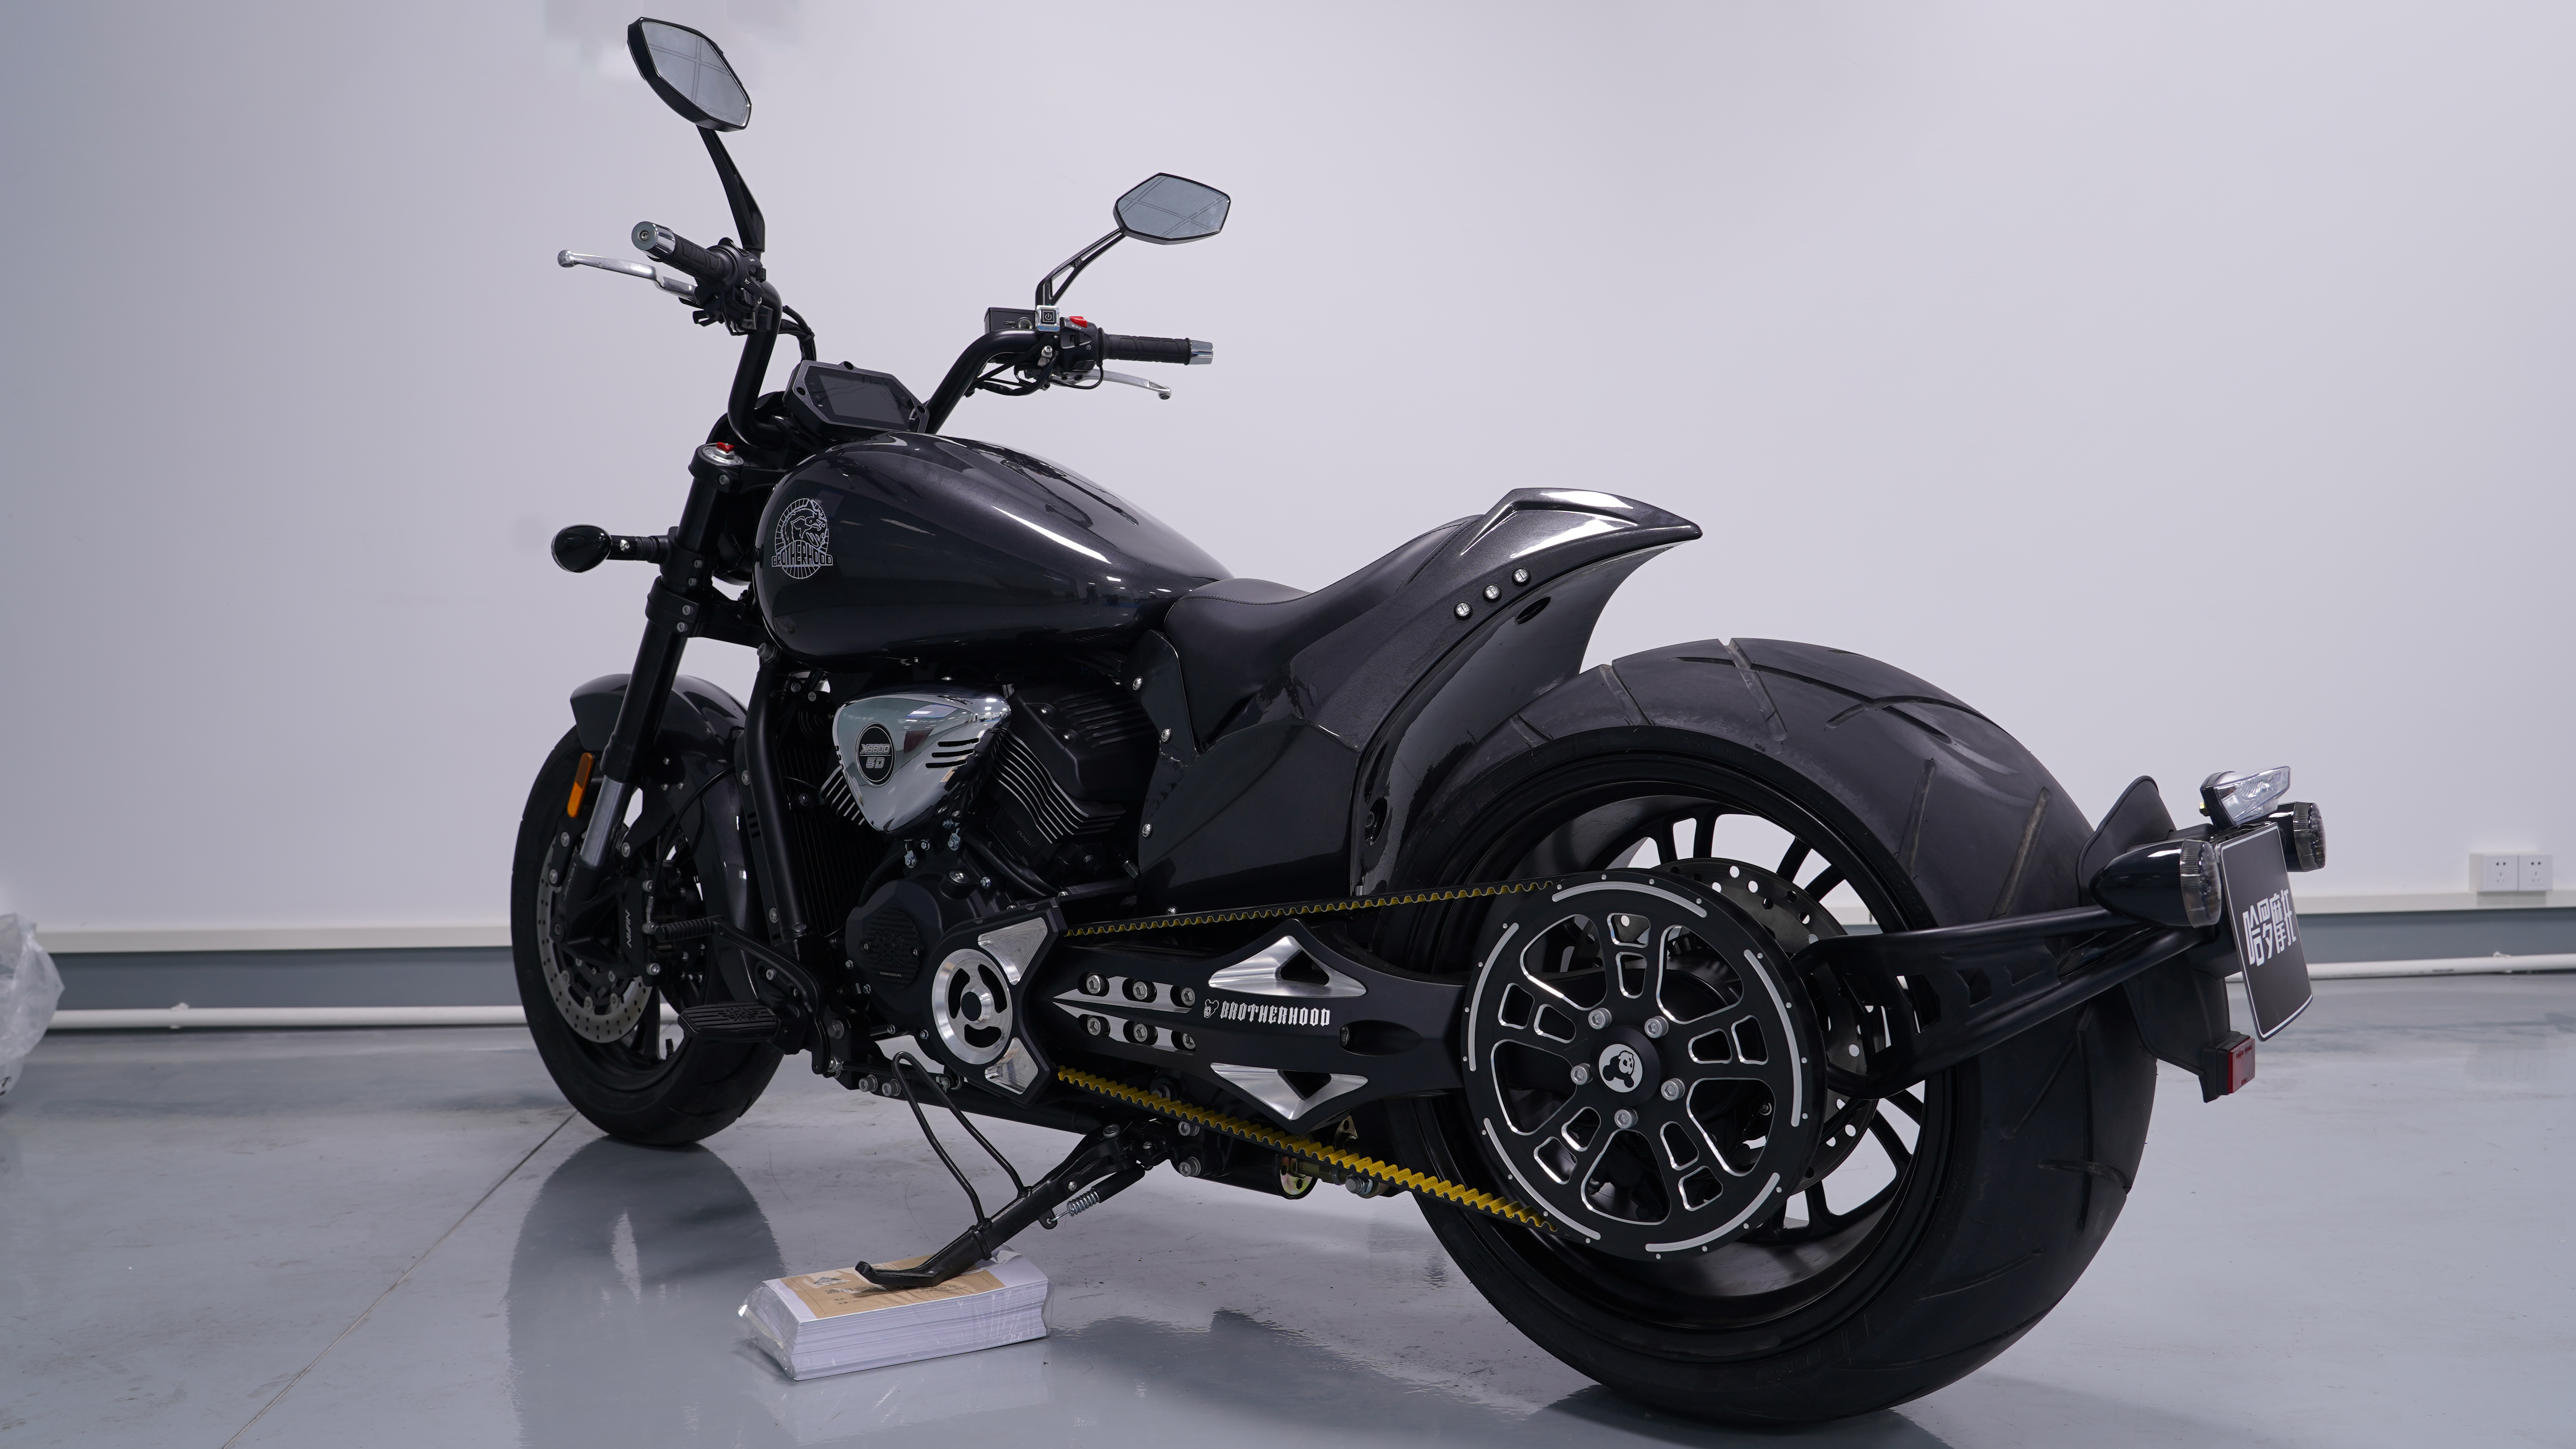 https://www.hanyangmoto.com/wolverine-800-hanyang-heavy-motorcycle-cruiser-motorbike-product/